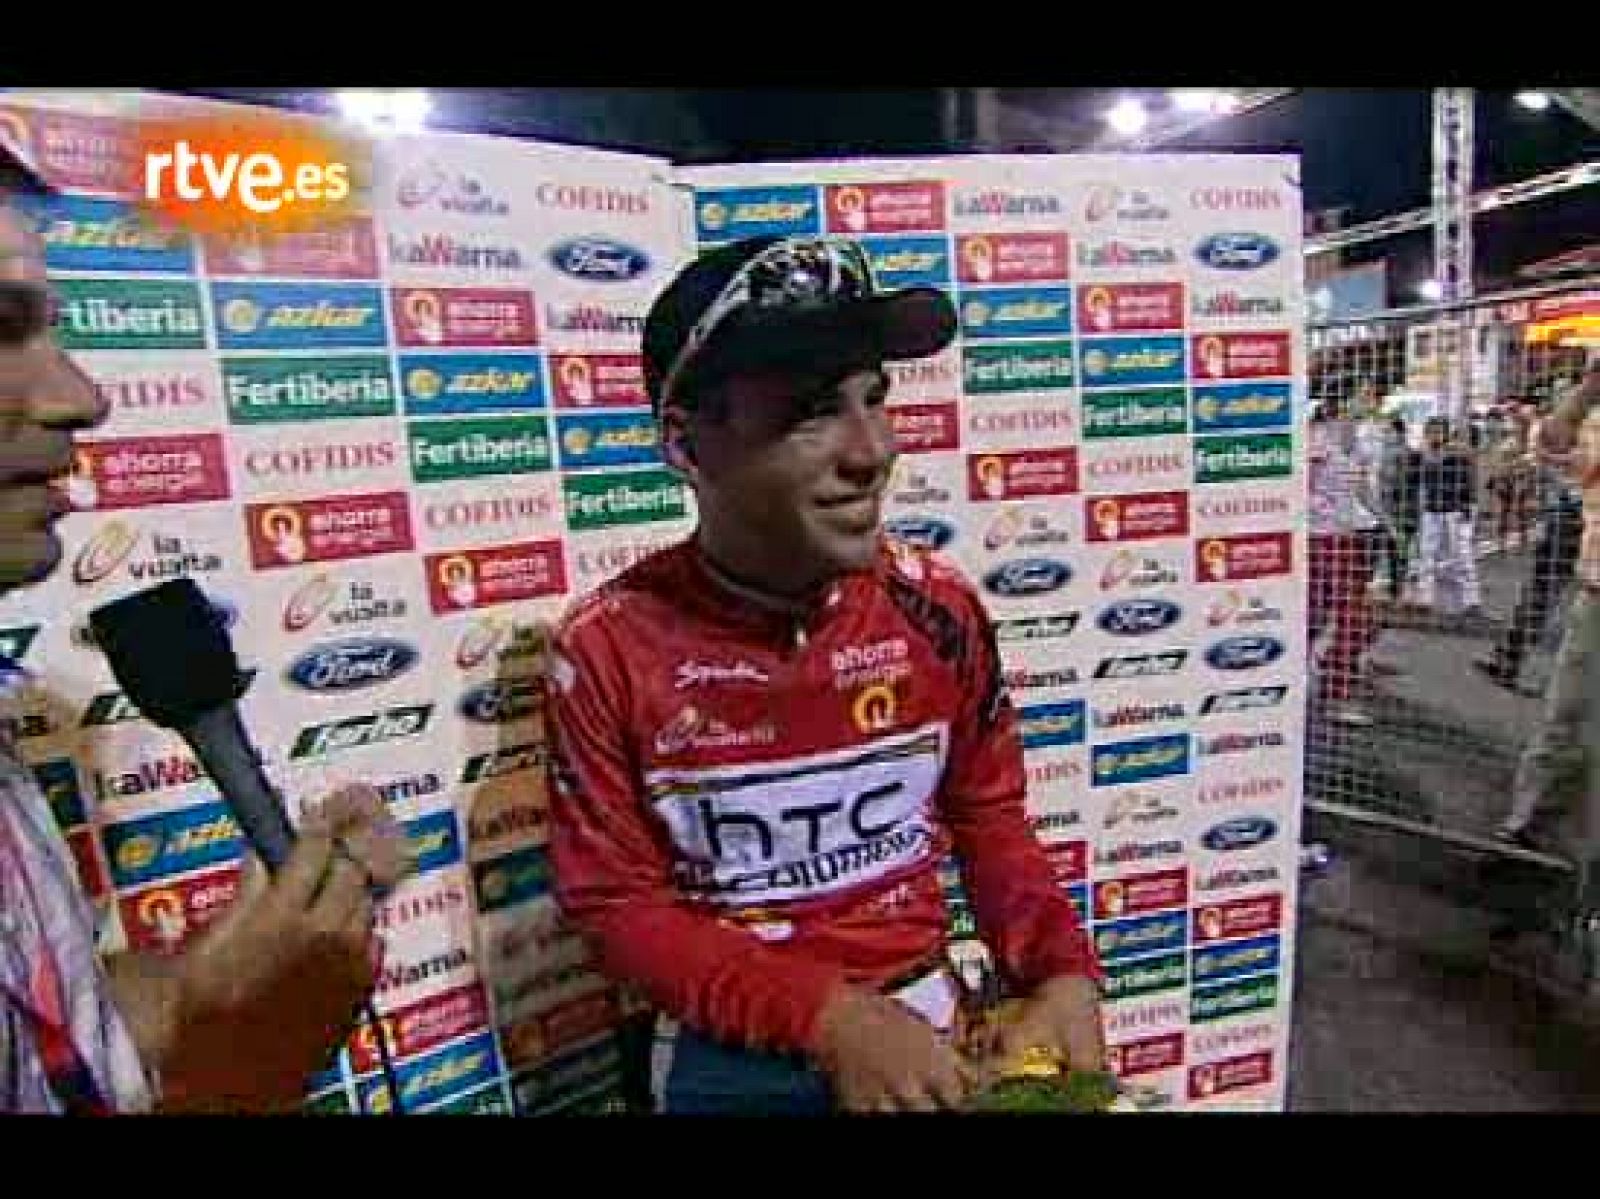 Cavendish estrena el maillot rojo en TVE